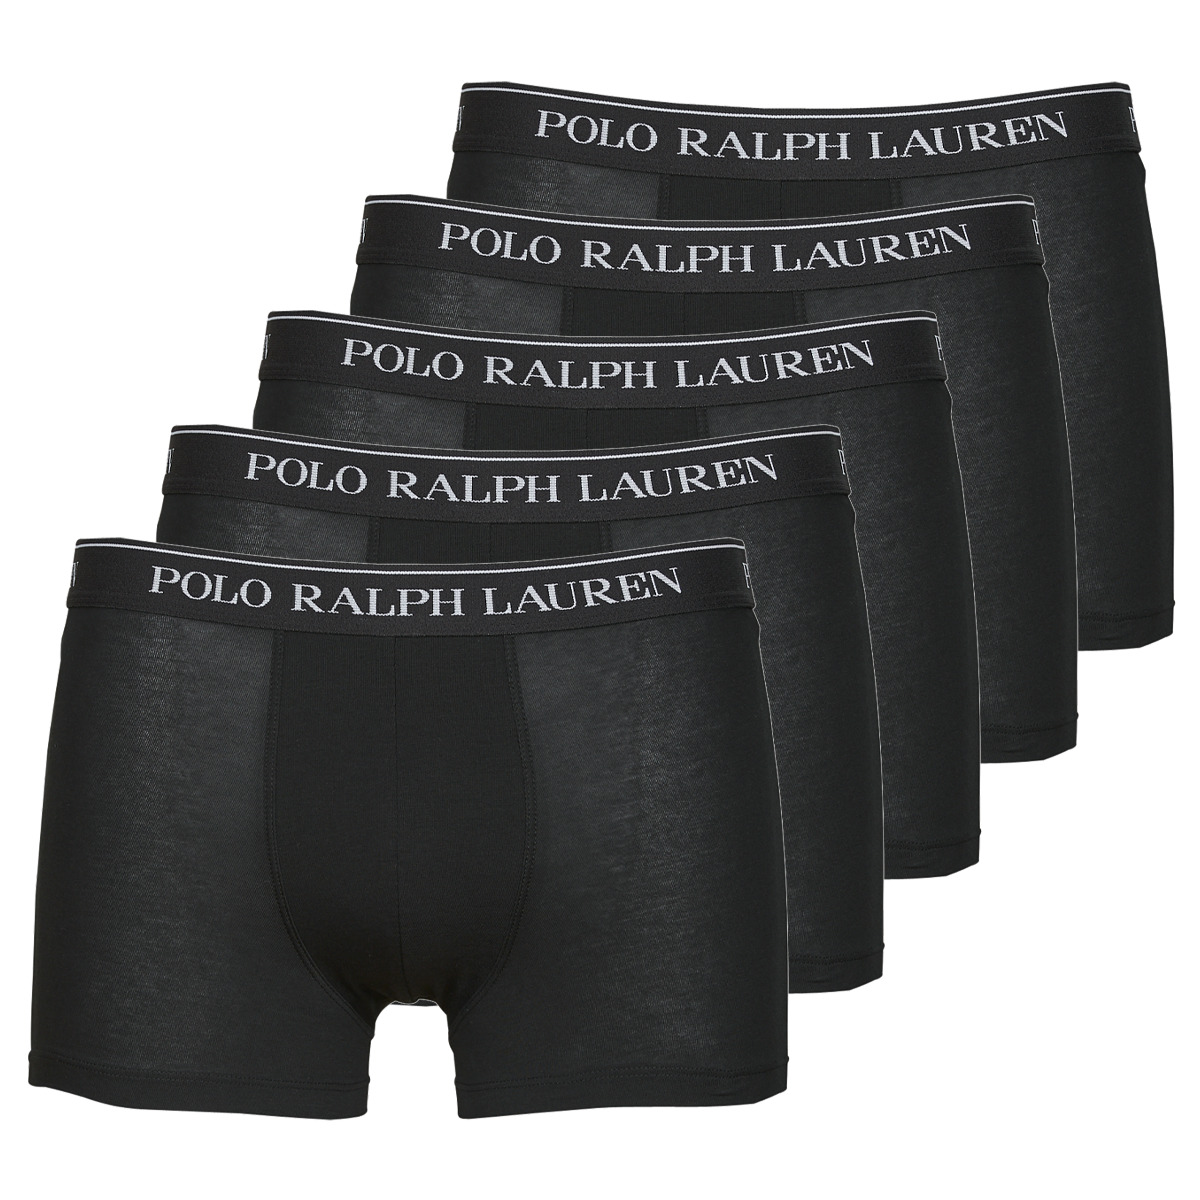 Polo Ralph Lauren Noir TRUNK X5 kq6XHRkO